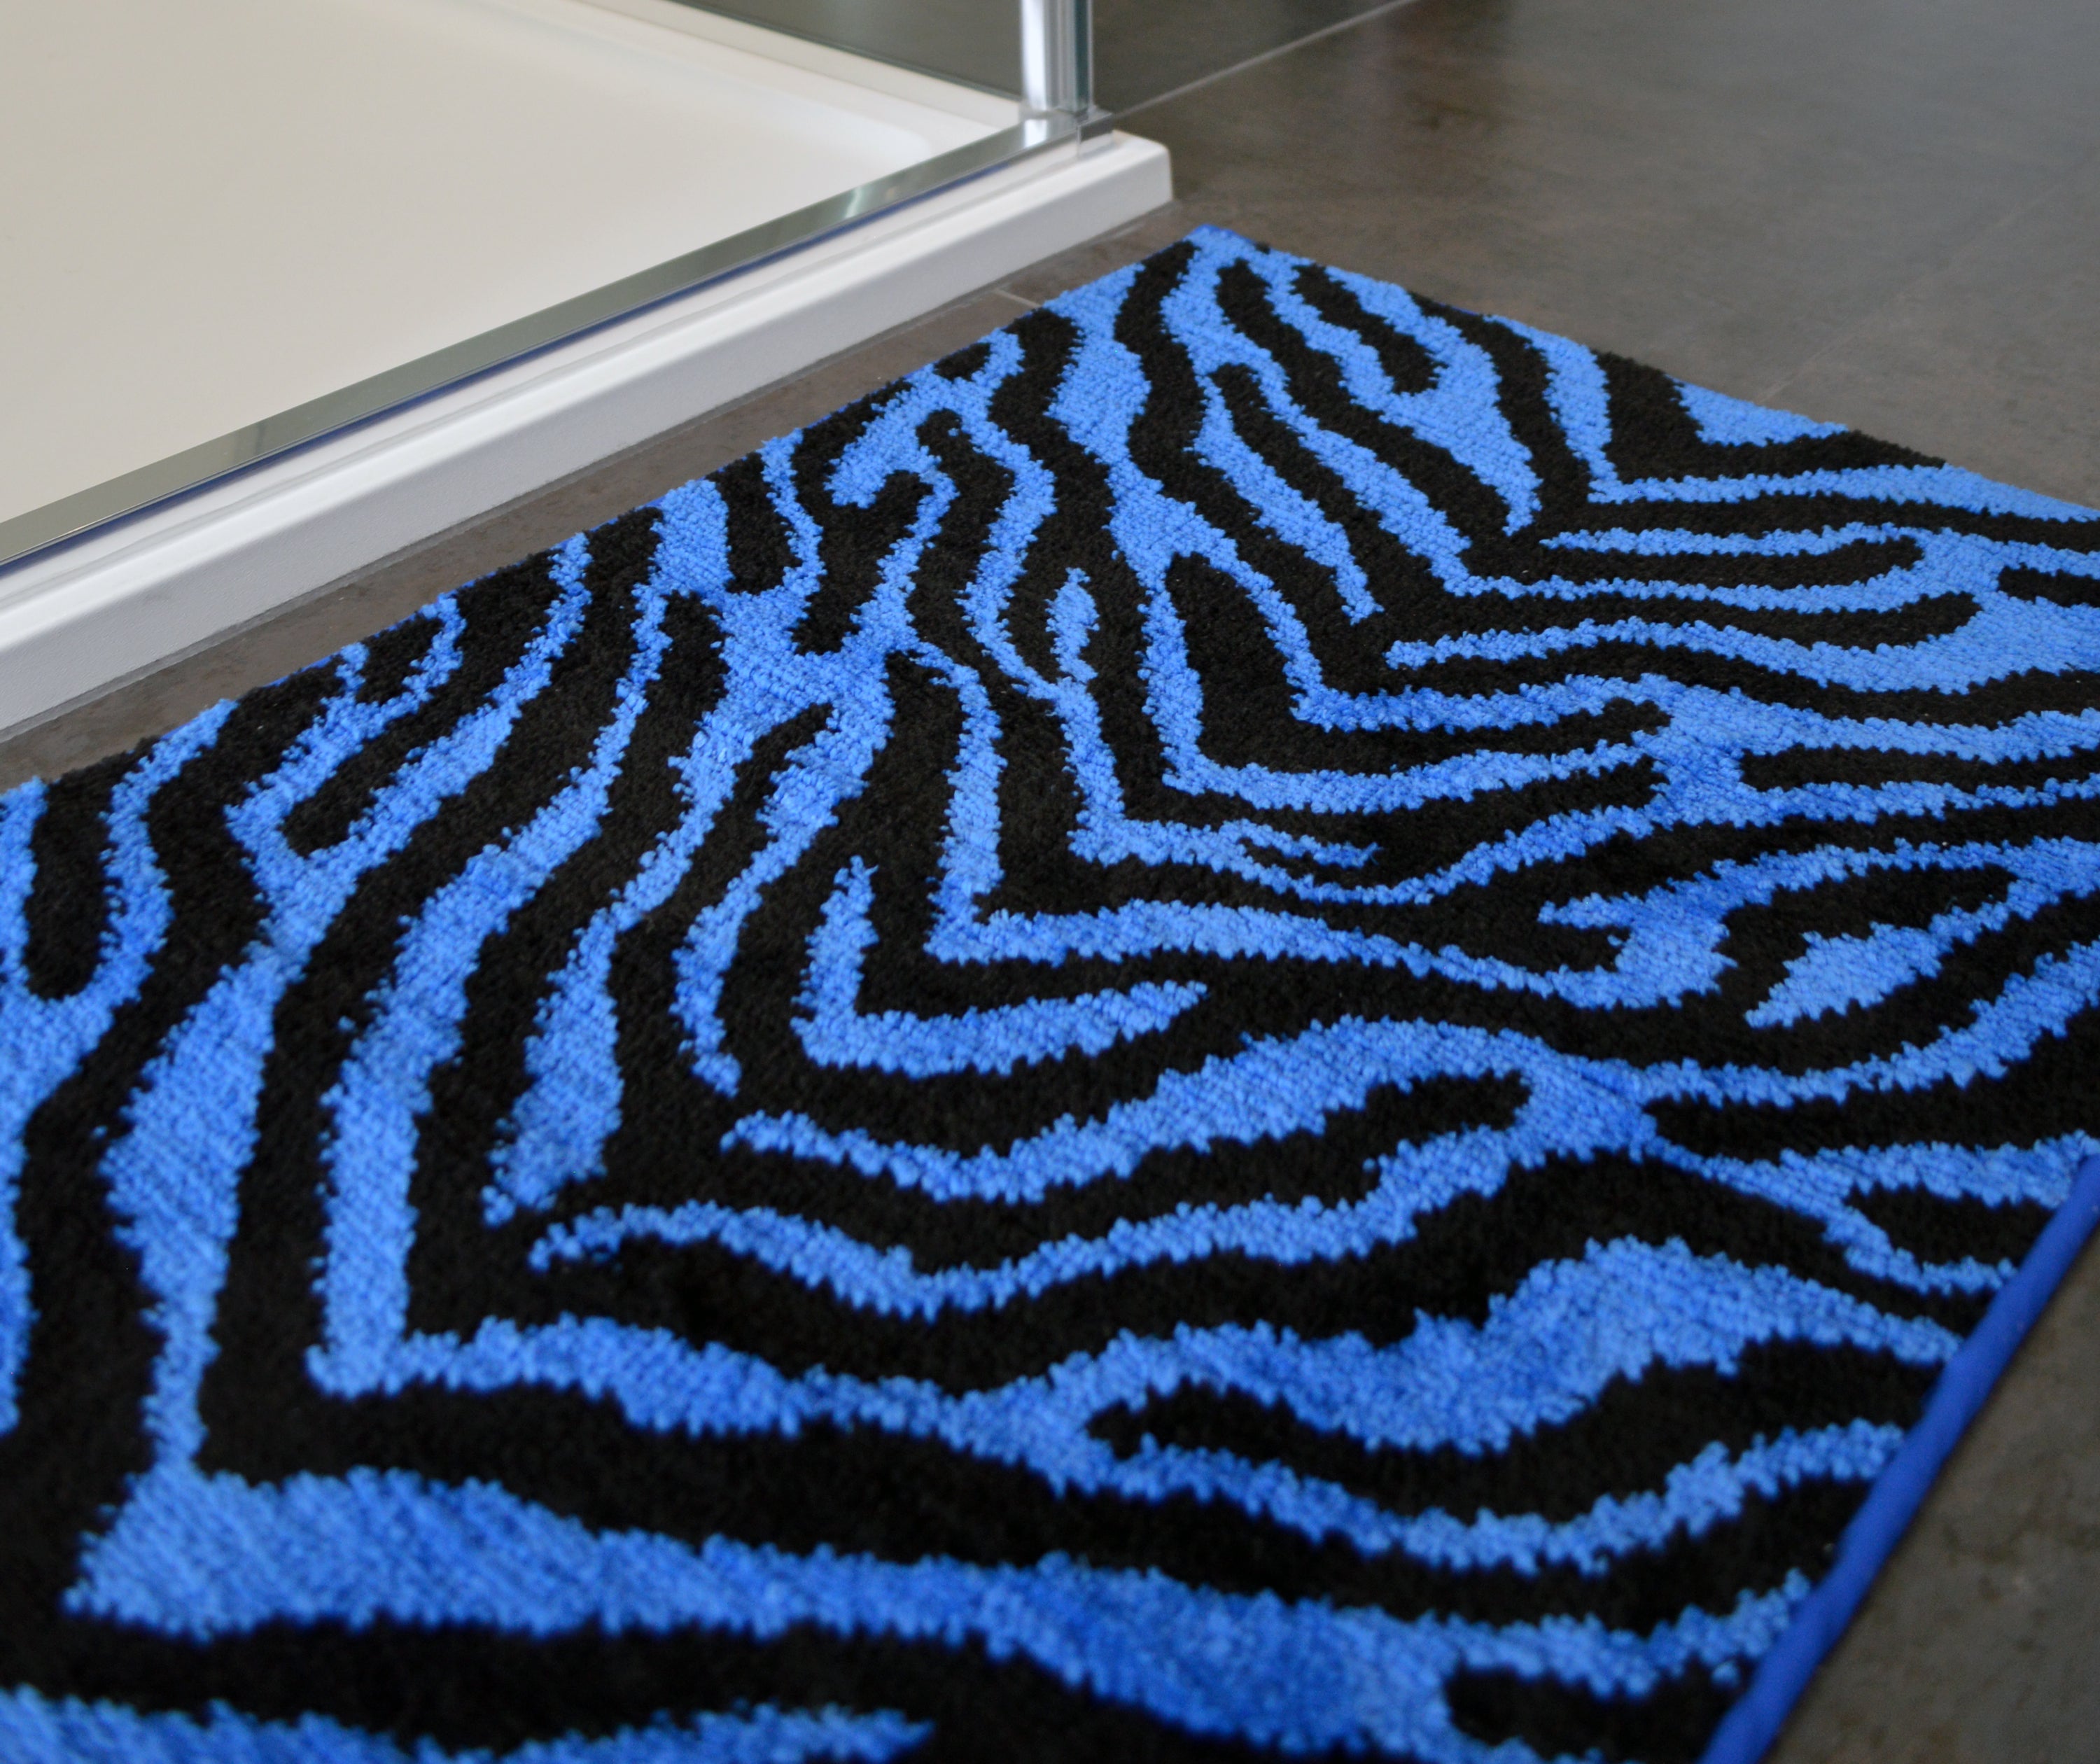 Blue and black Zebra Print Bath Mat - Colourful, fun bathroom decor